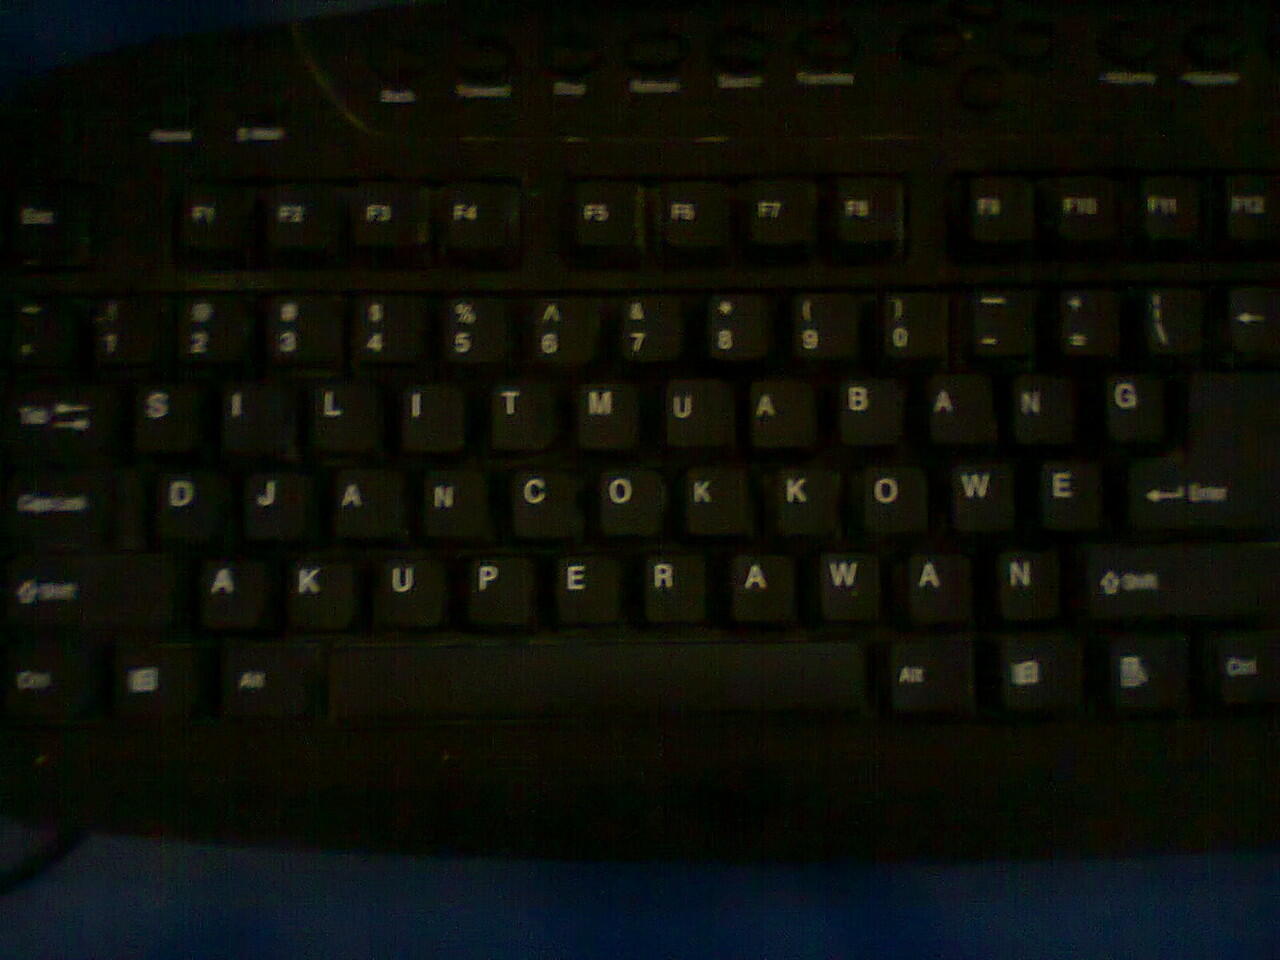 keyboard di skolah ane gan :ngakak